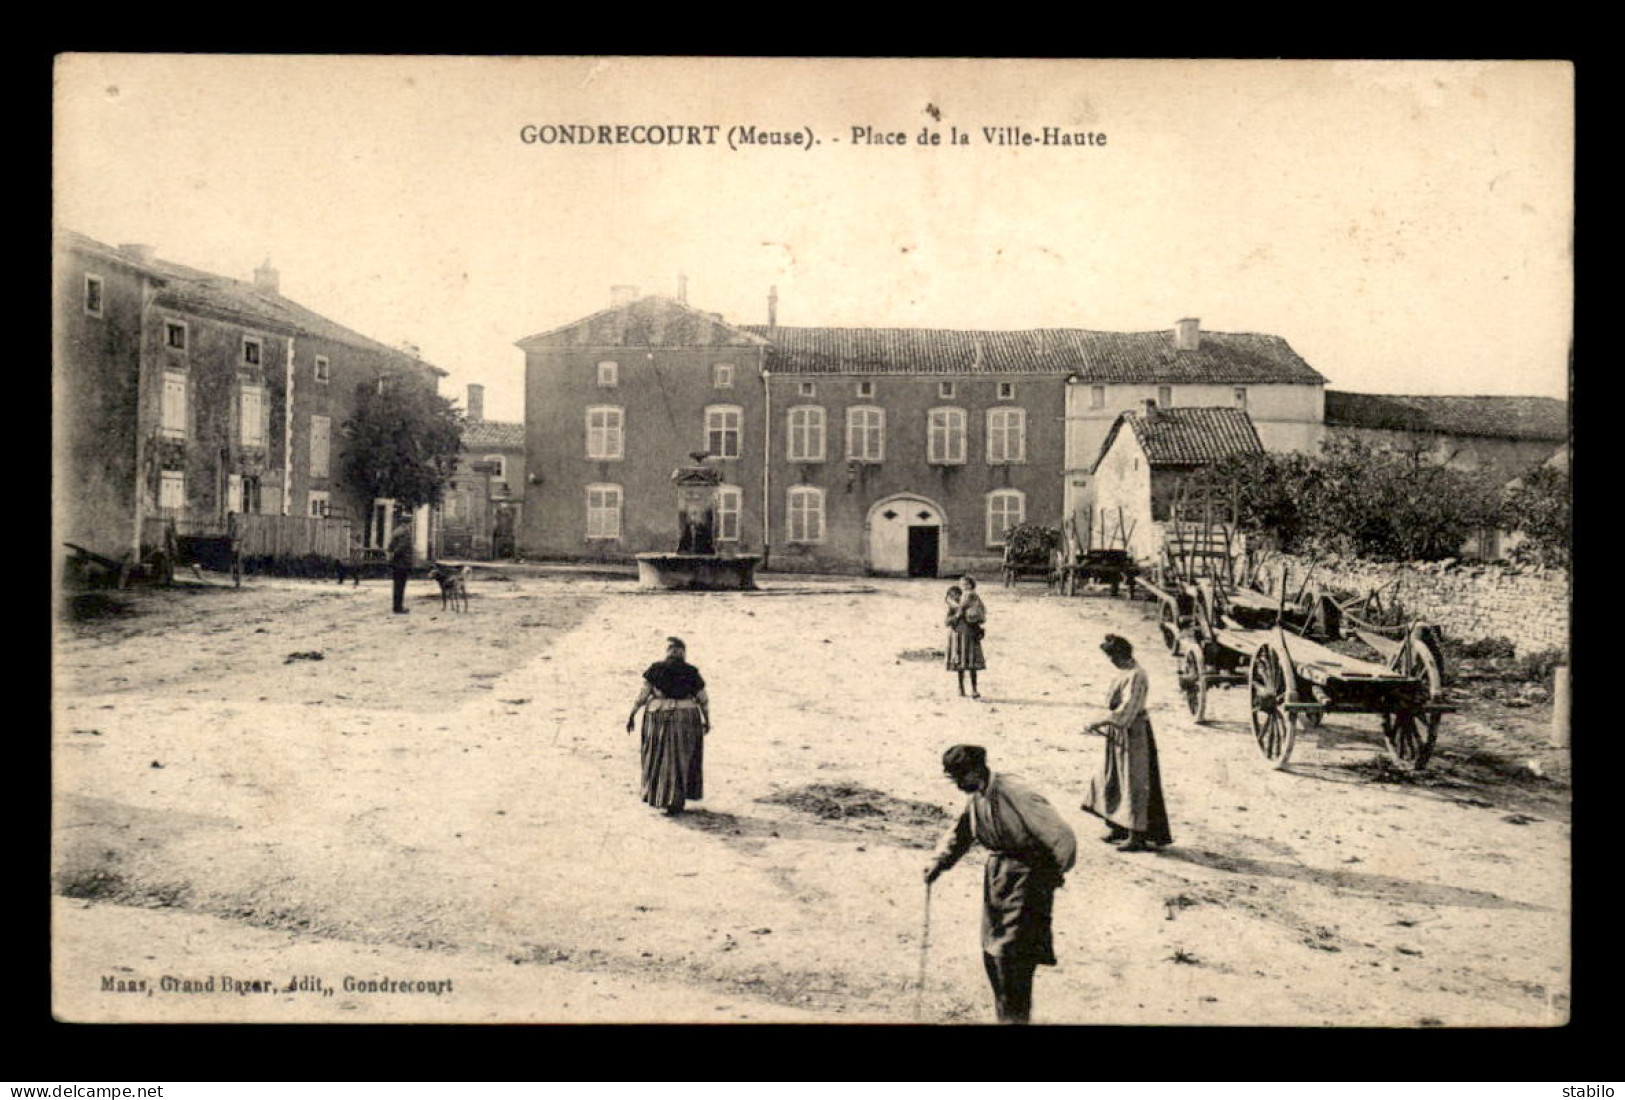 55 - GONDRECOURT - PLACE DE LA VILLE-HAUTE - EDITEUR MAAS - Gondrecourt Le Chateau